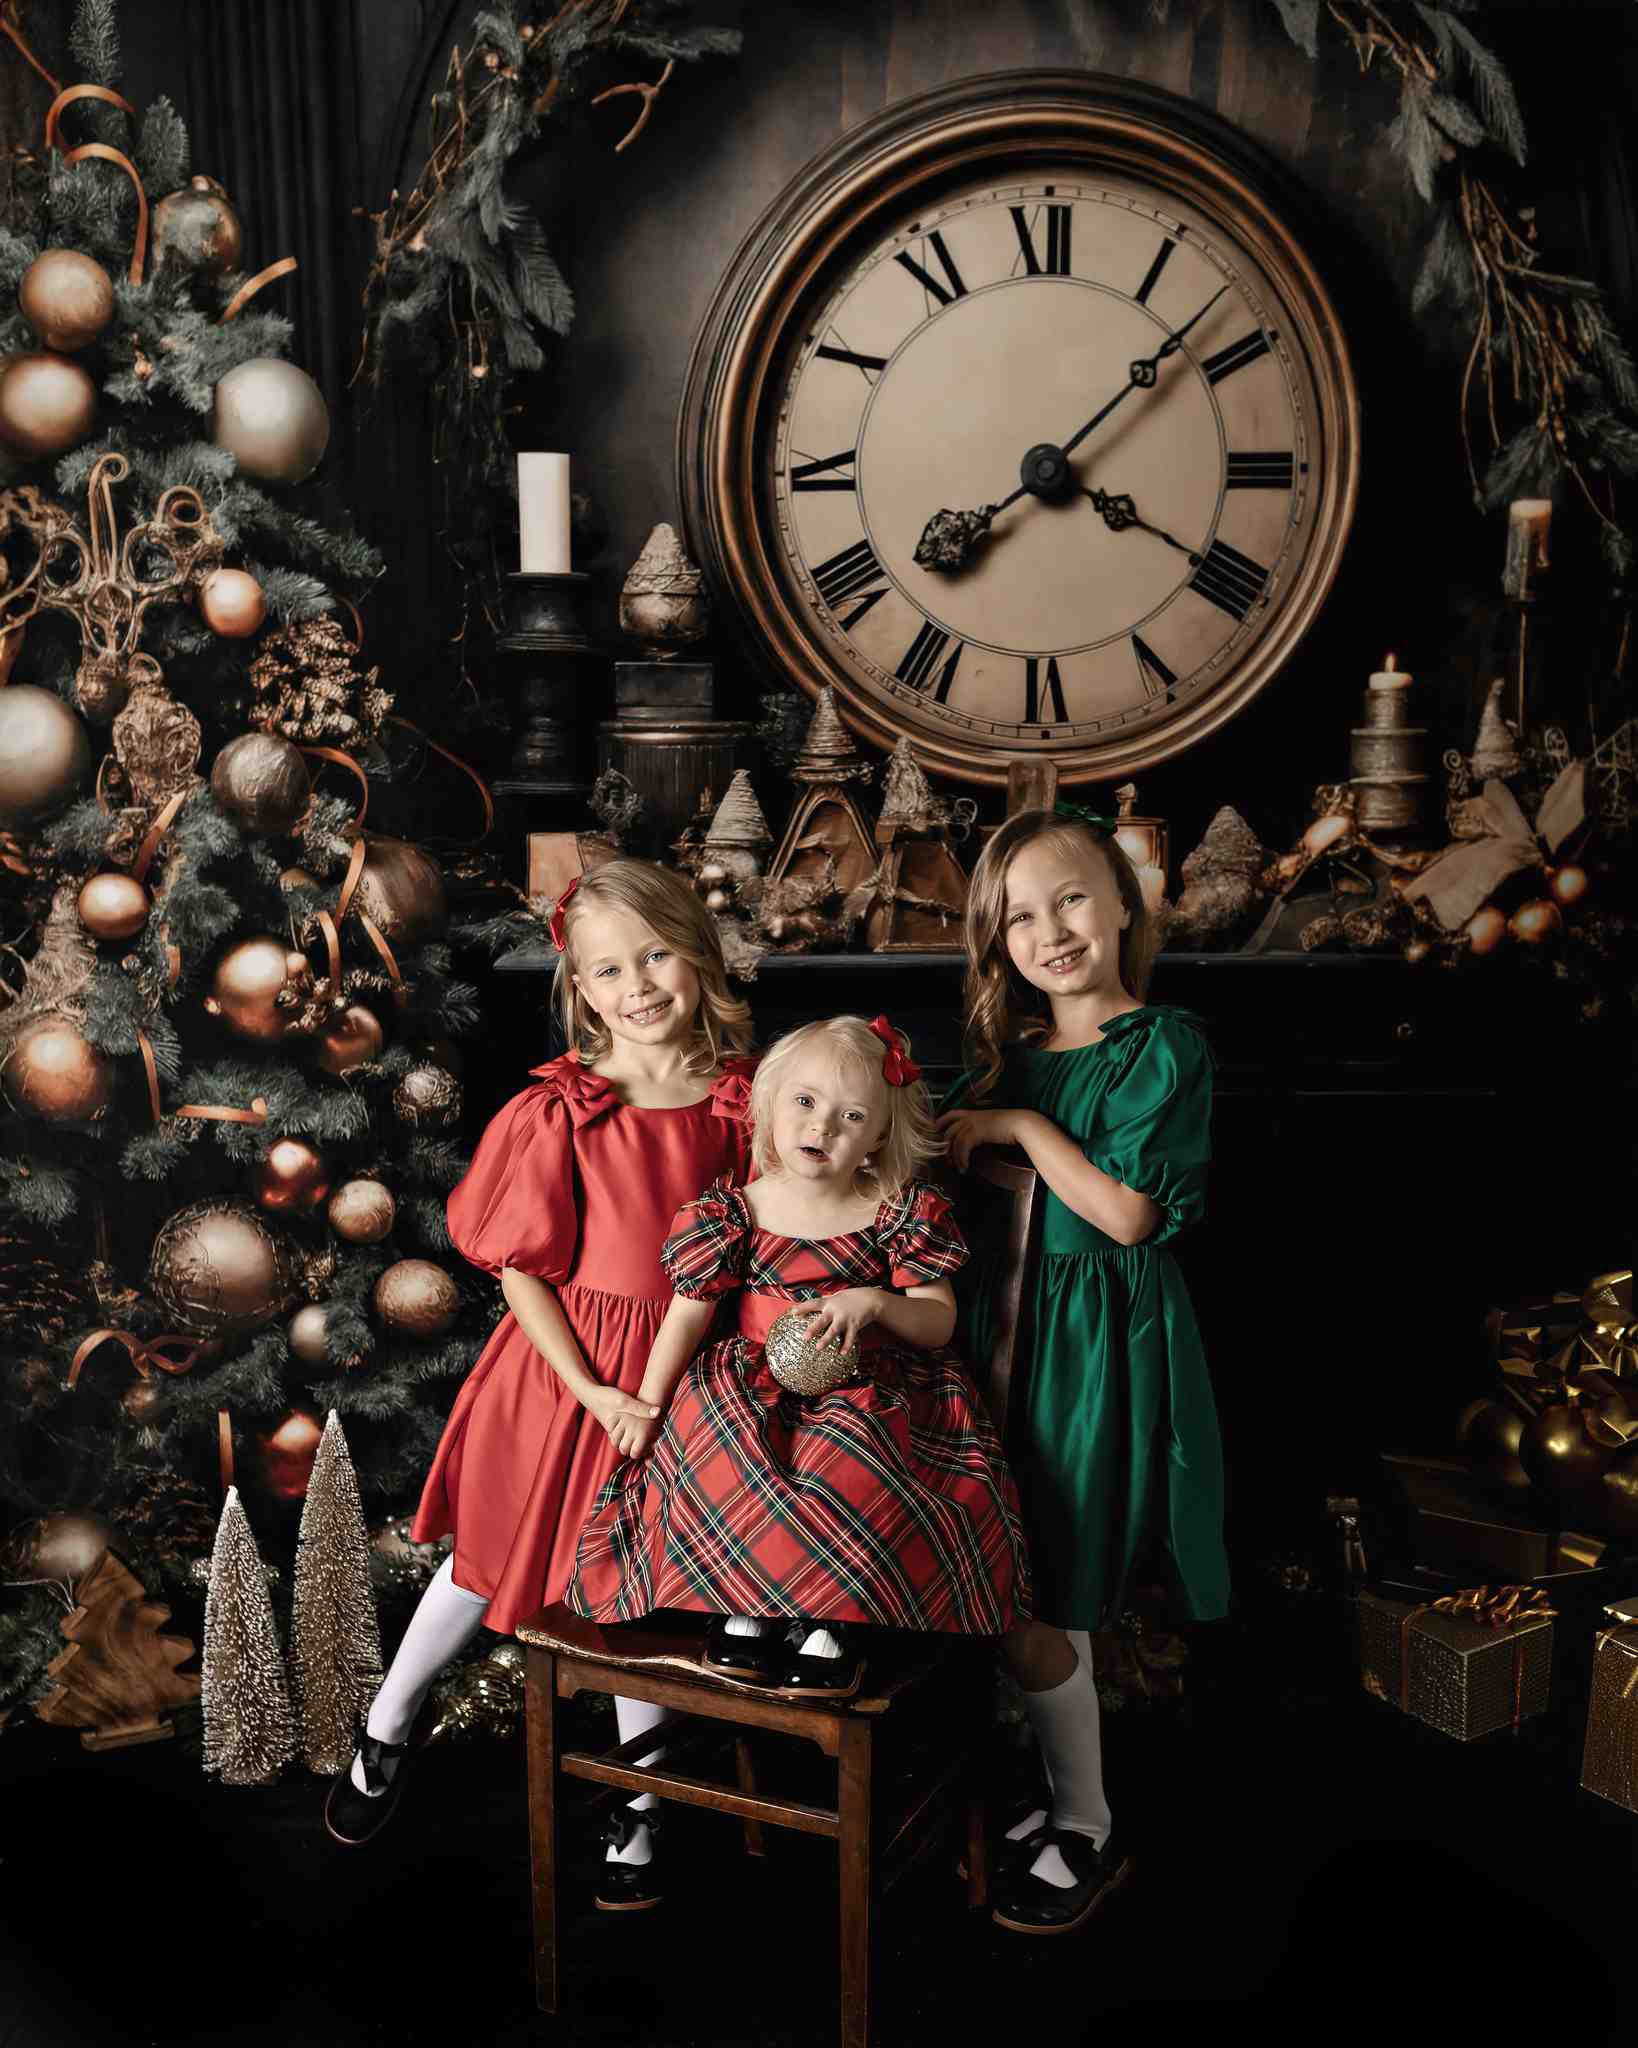 Kate Viktorianische Weihnachten-Uhr Hintergrund für Fotografie